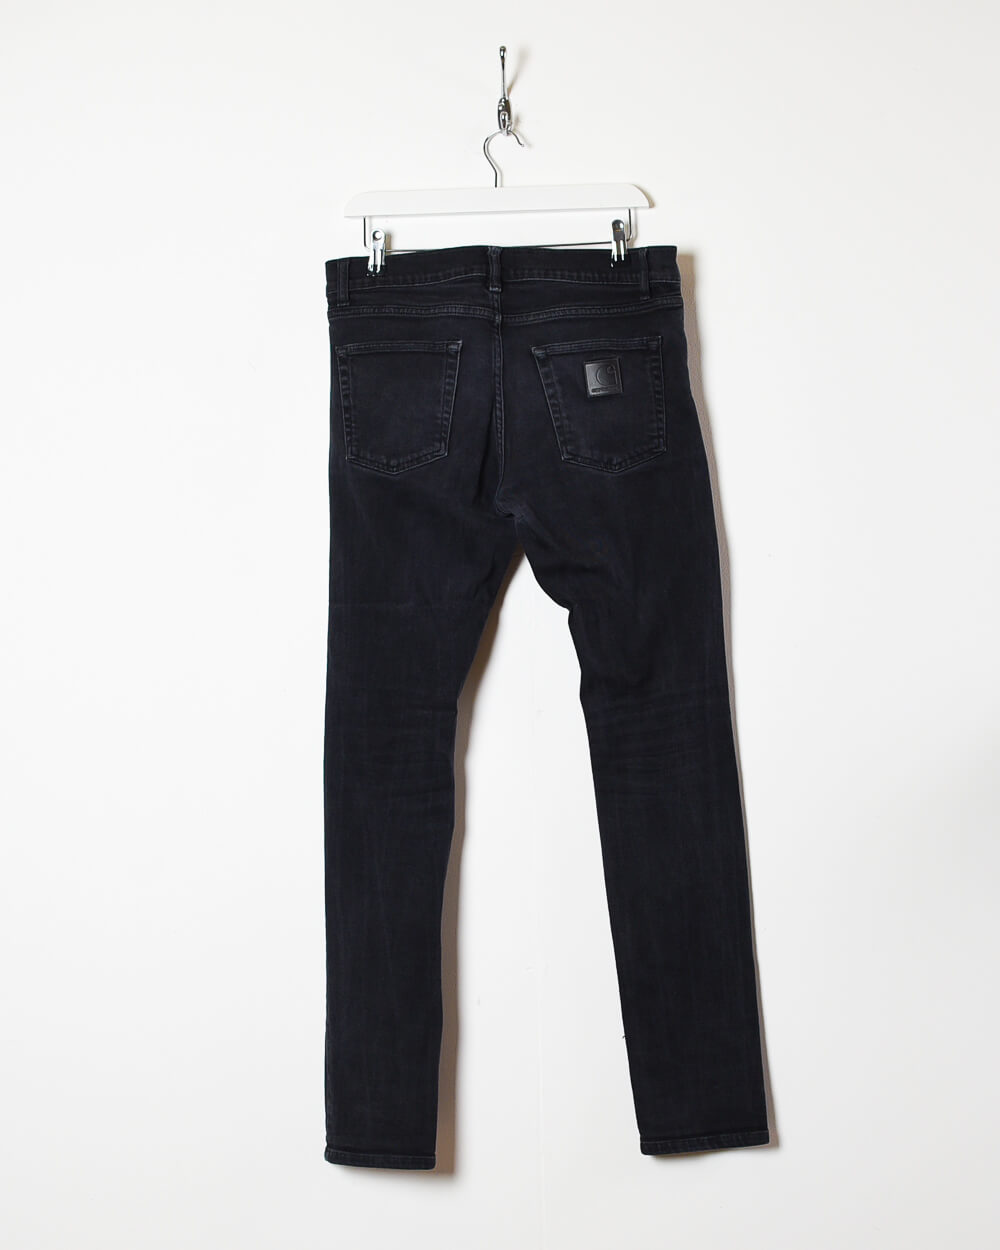 Black Carhartt Jeans - W33 L32